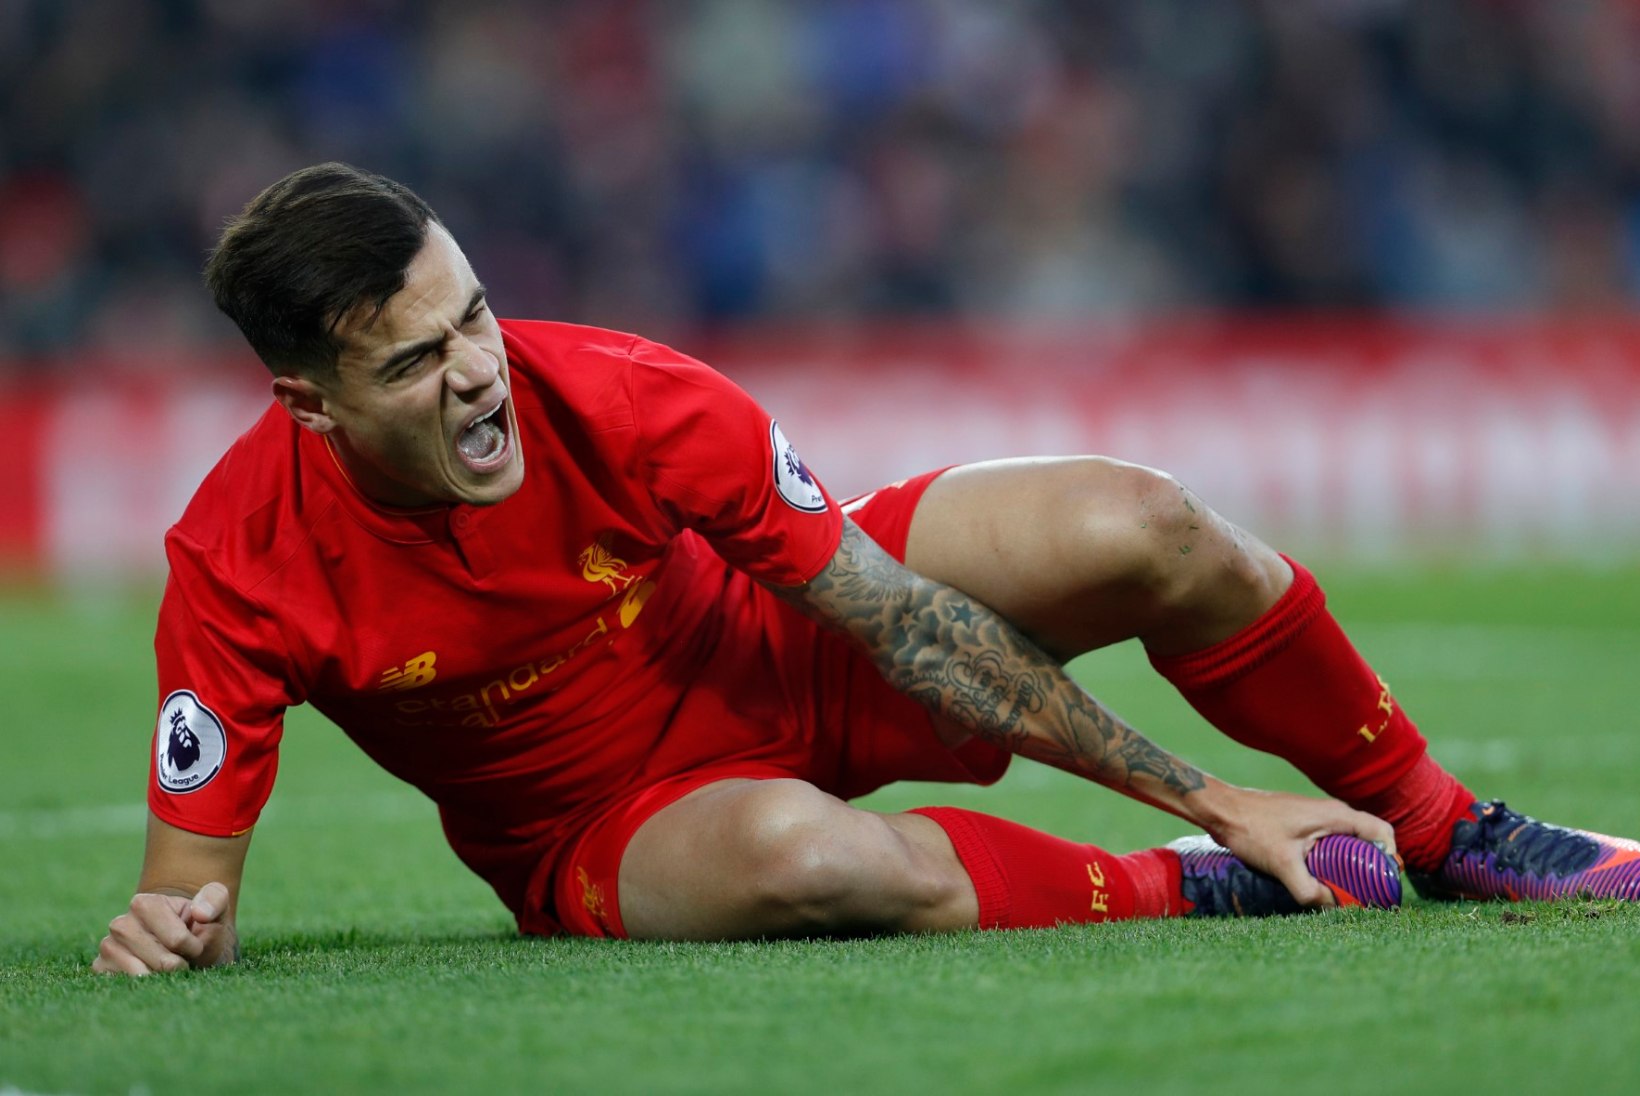 HEA UUDIS: Liverpooli täht Coutinho on vigastuspausi järel taas trenni vihtumas